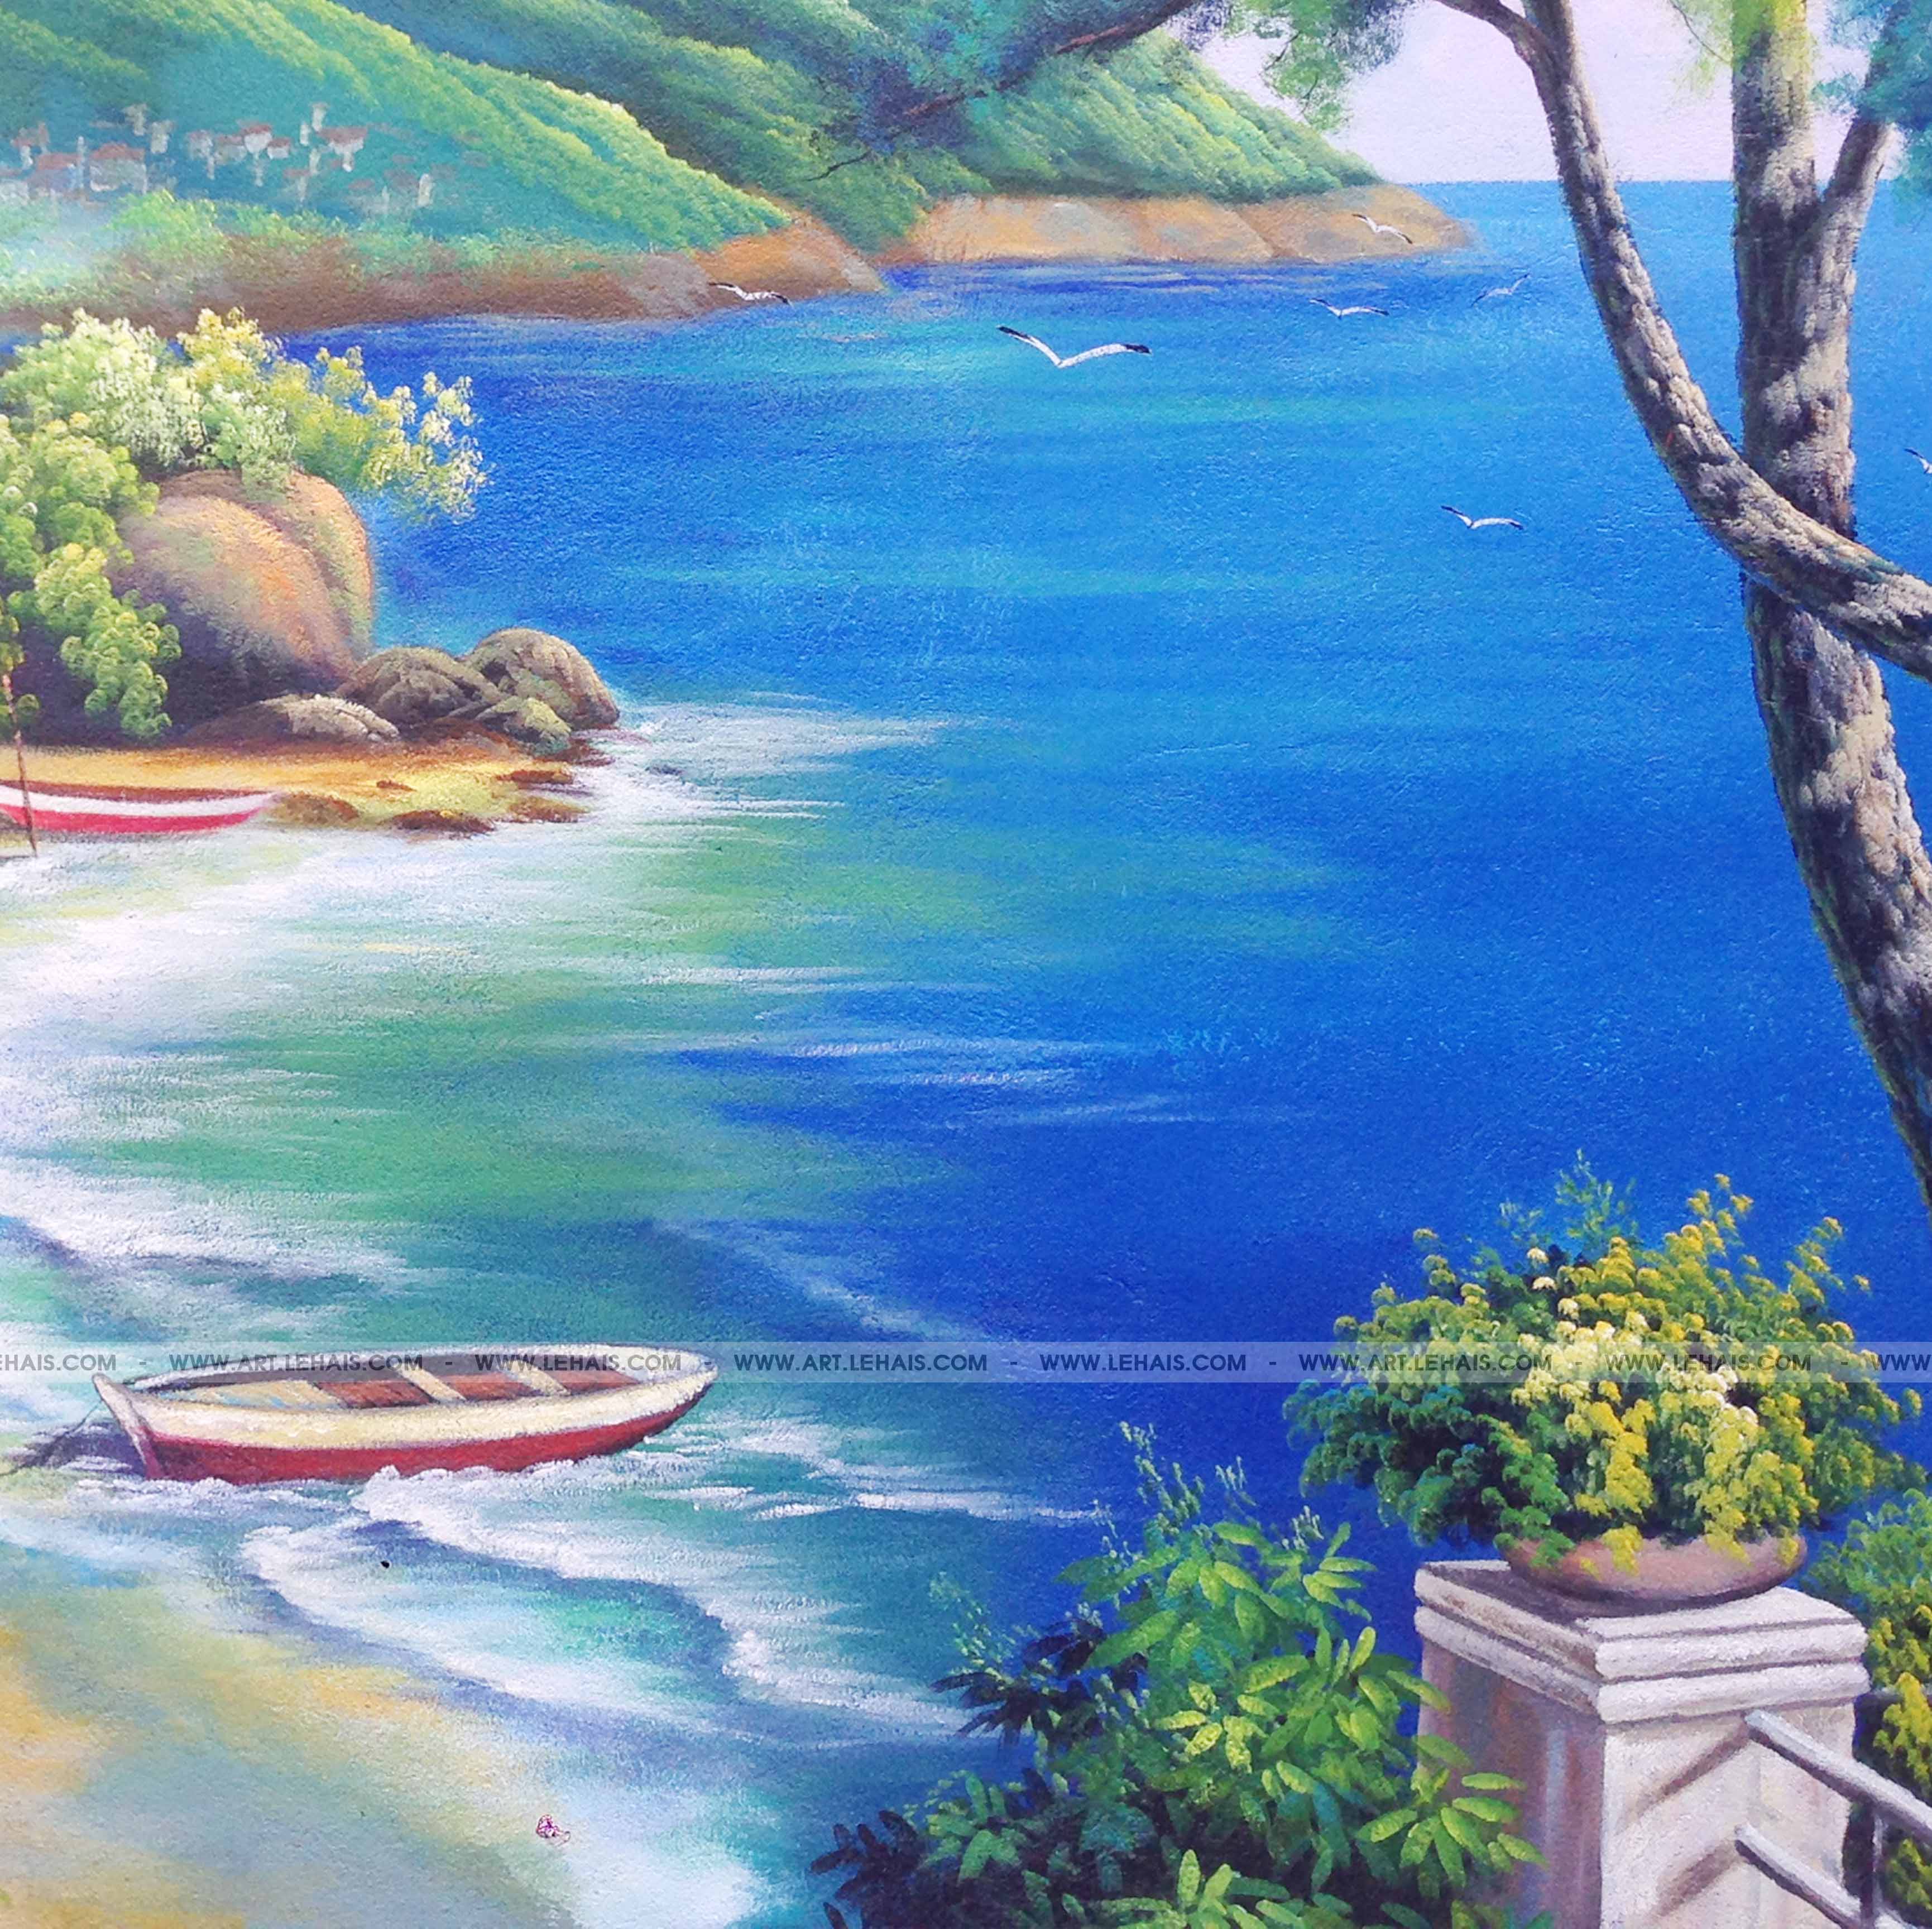 Vẽ tranh phong cảnh biển tại gia đình ở Tề Lỗ, Vĩnh Tường, Vĩnh Phúc -  TT115LHAR - LEHAIS ART